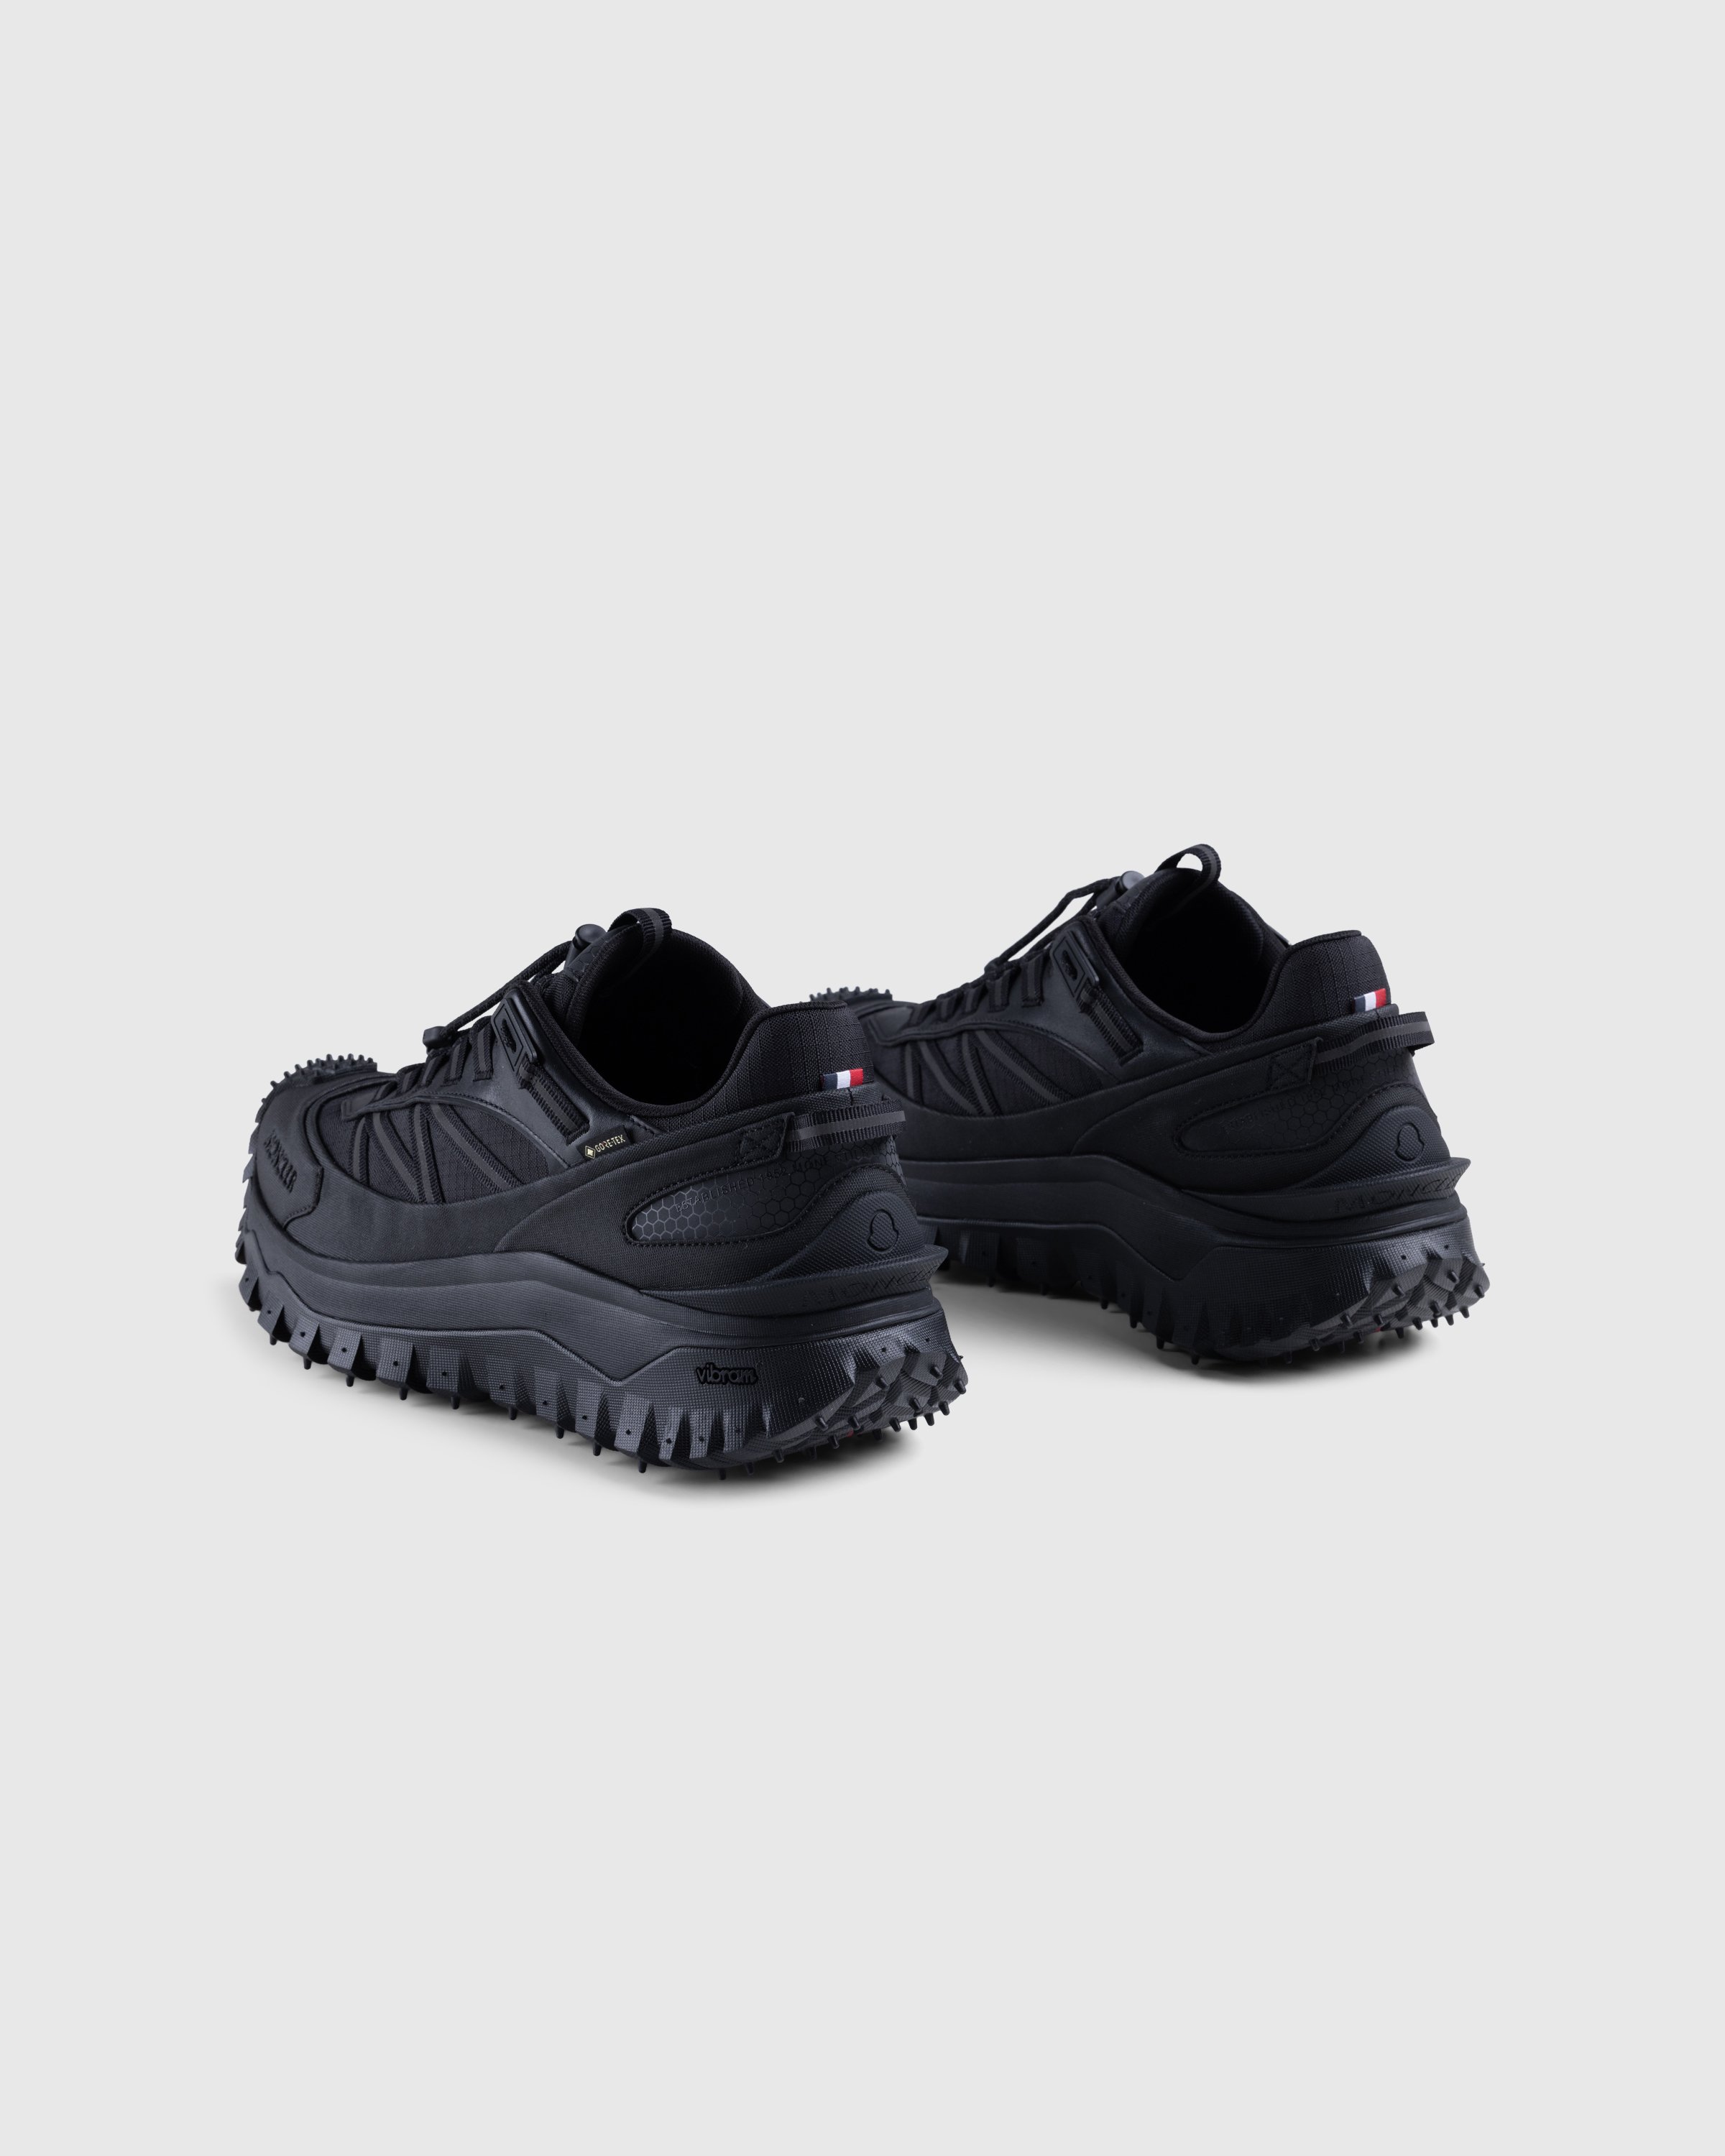 Moncler - Trailgrip GTX Low-Top Sneakers Black - Footwear - Black - Image 4